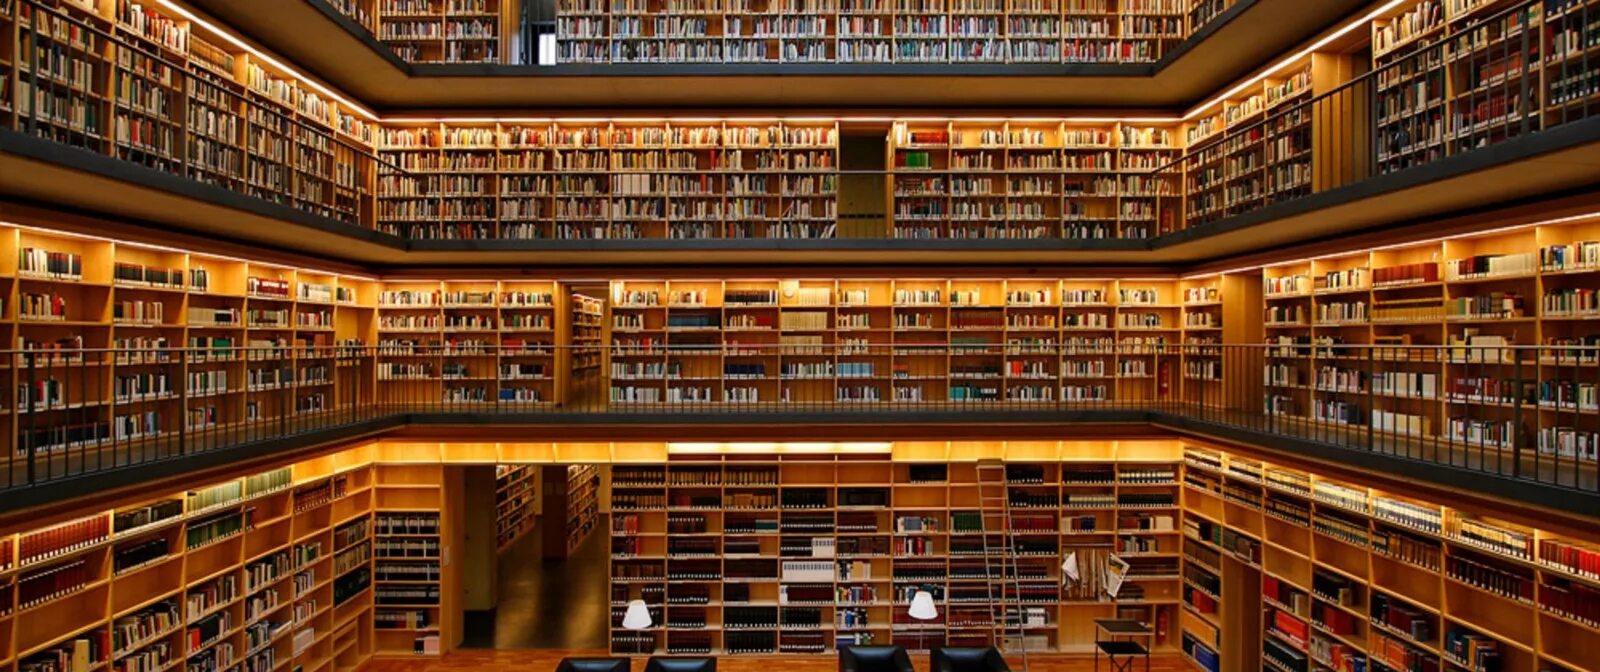 19-Ярусное книгохранилище РГБ. Библиотека Phillips Exeter. Красивая библиотека. Большая библиотека. Крупнейшая электронная библиотека